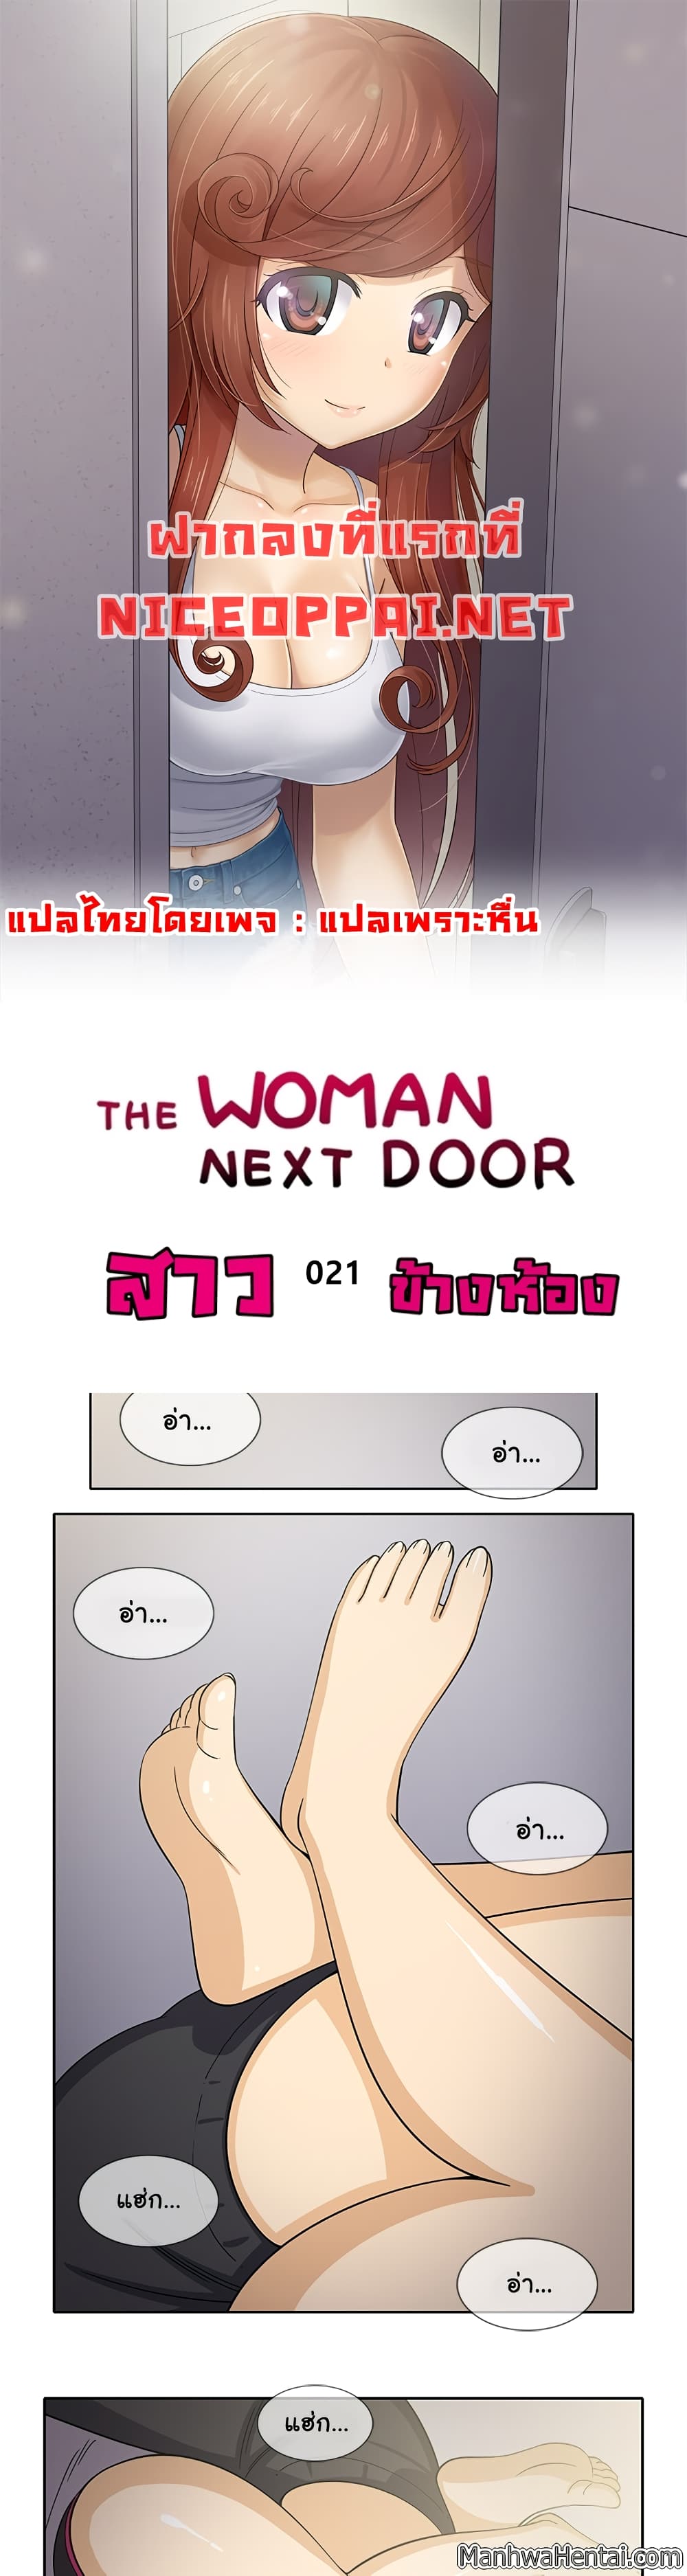 The Woman Next Door 21-21